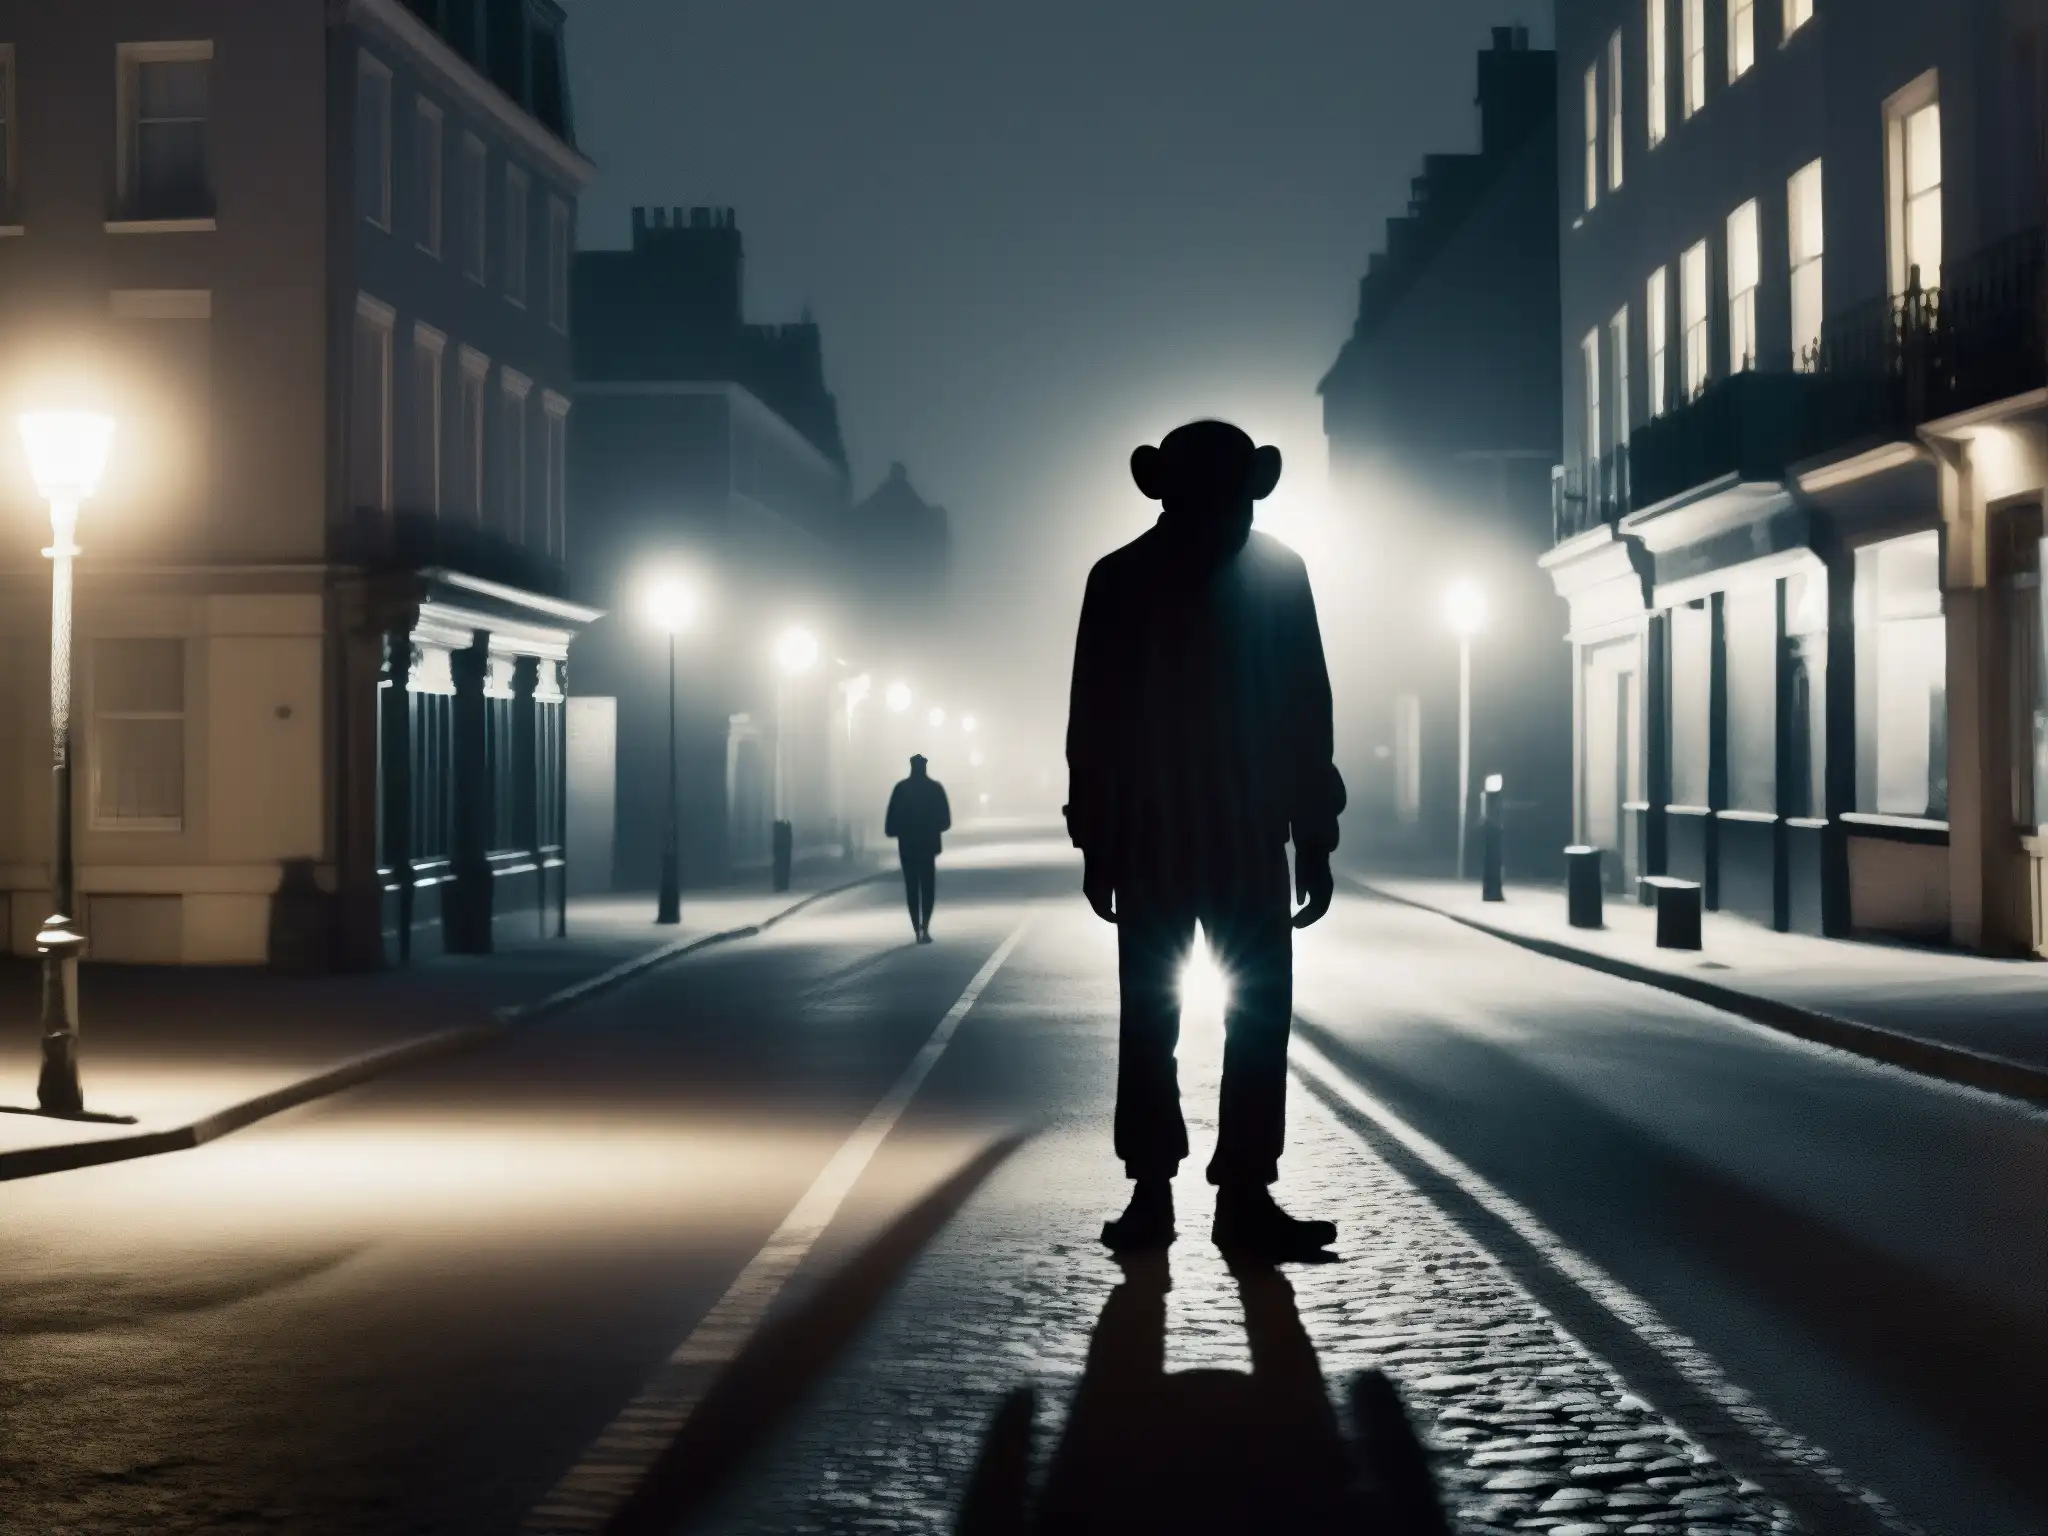 En la imagen se ve una misteriosa figura con rasgos de mono en una calle desierta de noche